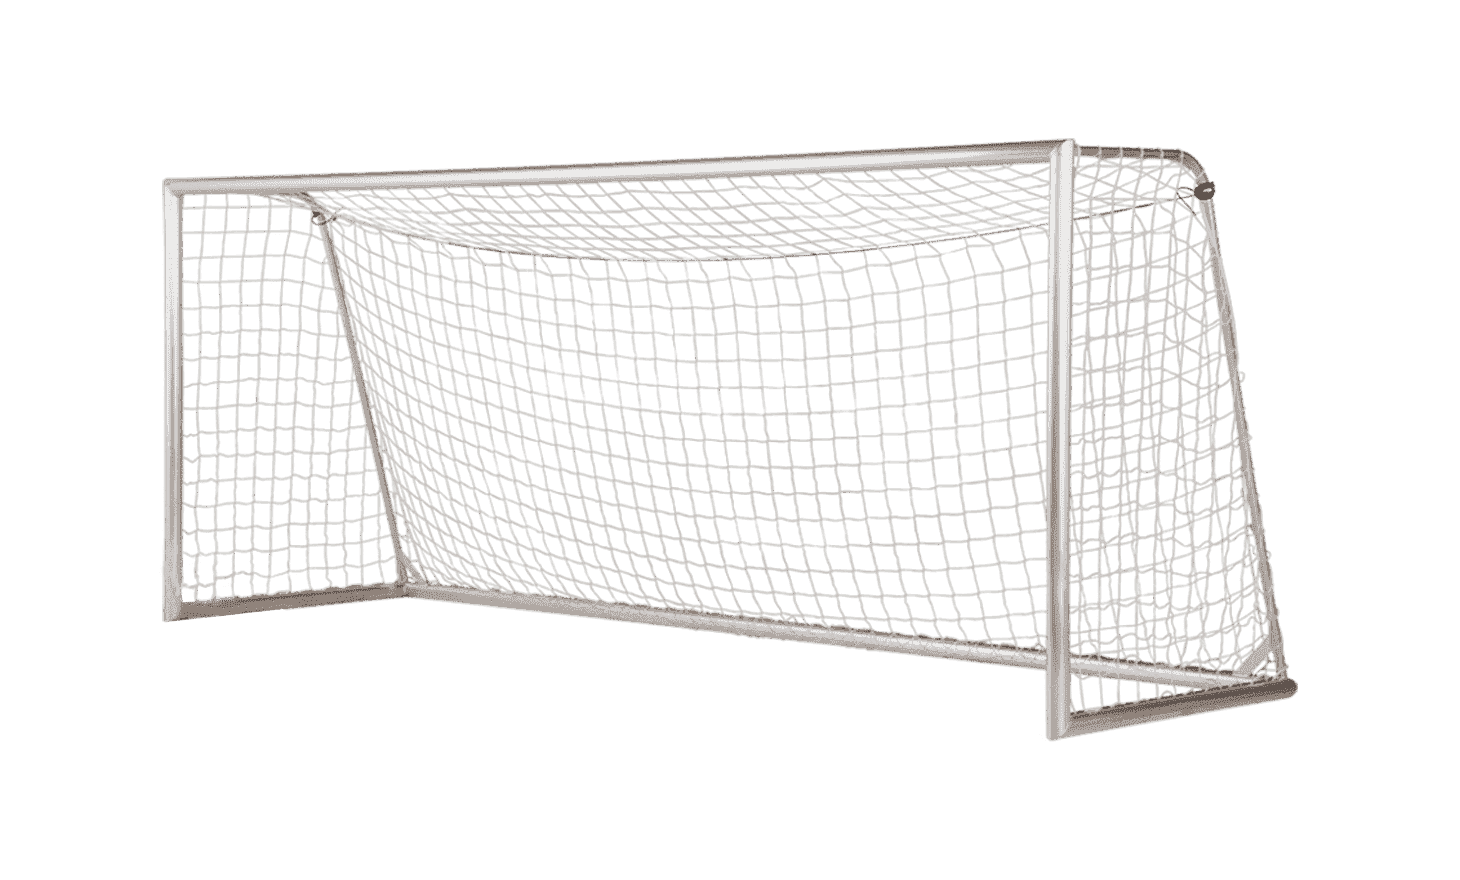 Freestanding Football Goals